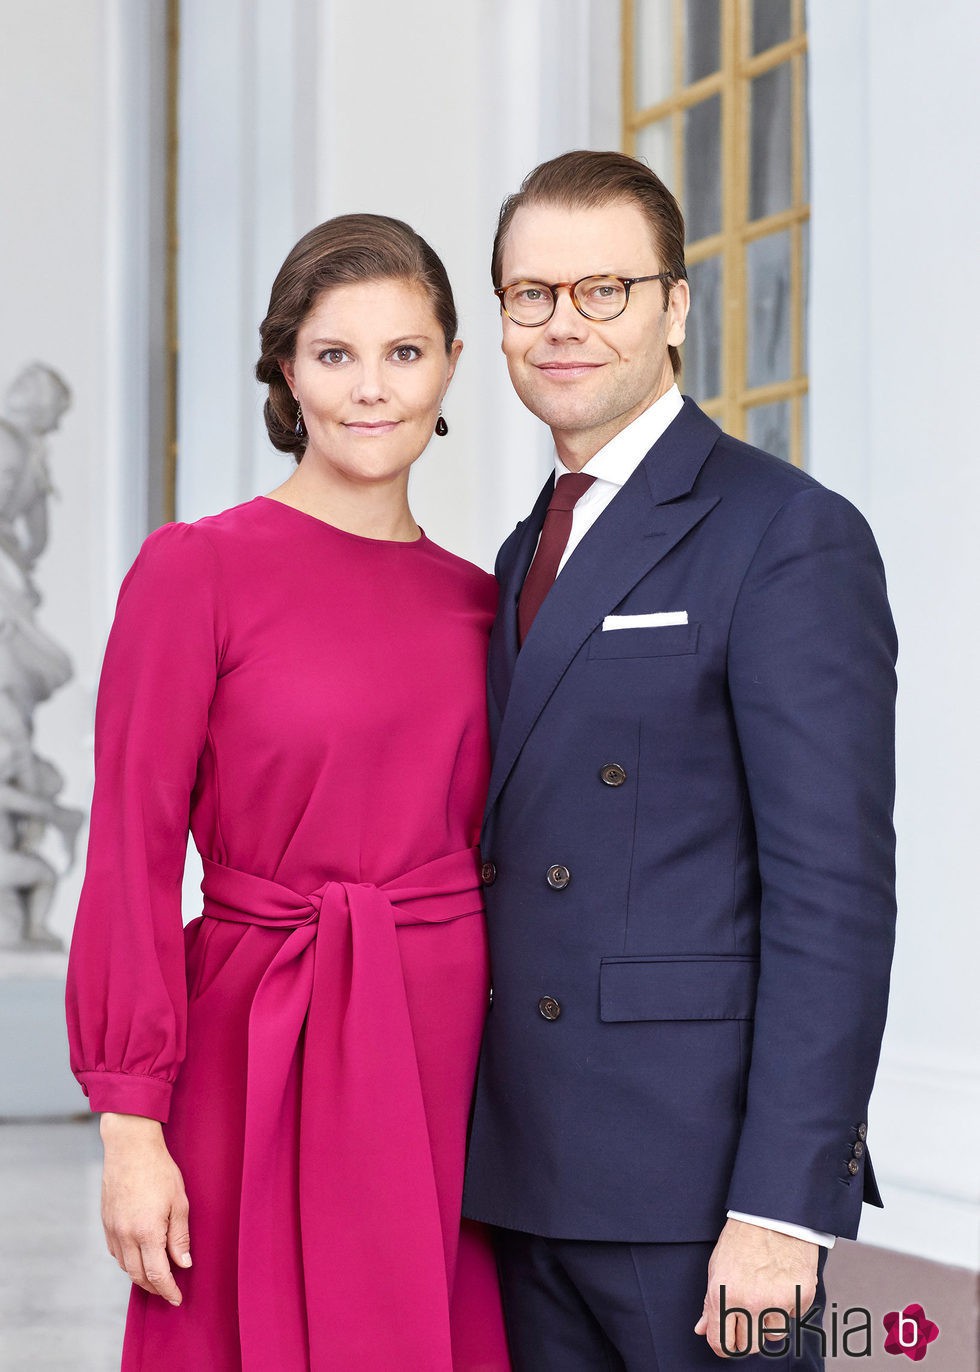 Foto oficial de la Princesa Victoria y el Príncipe Daniel de Suecia